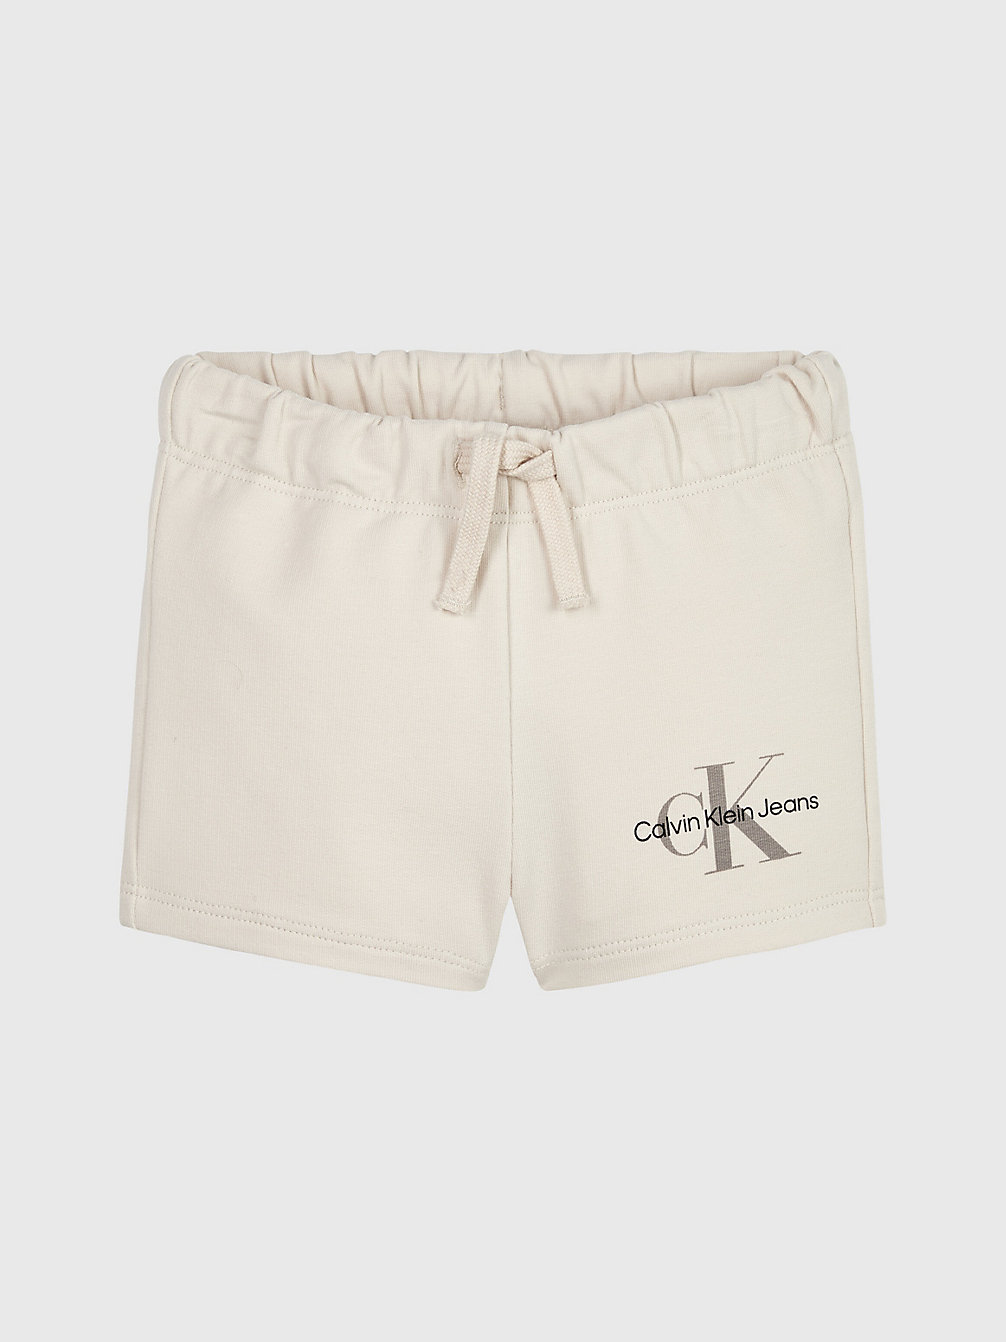 WHITECAP GRAY Baby-Shorts Aus Bio-Baumwolle undefined newborn Calvin Klein